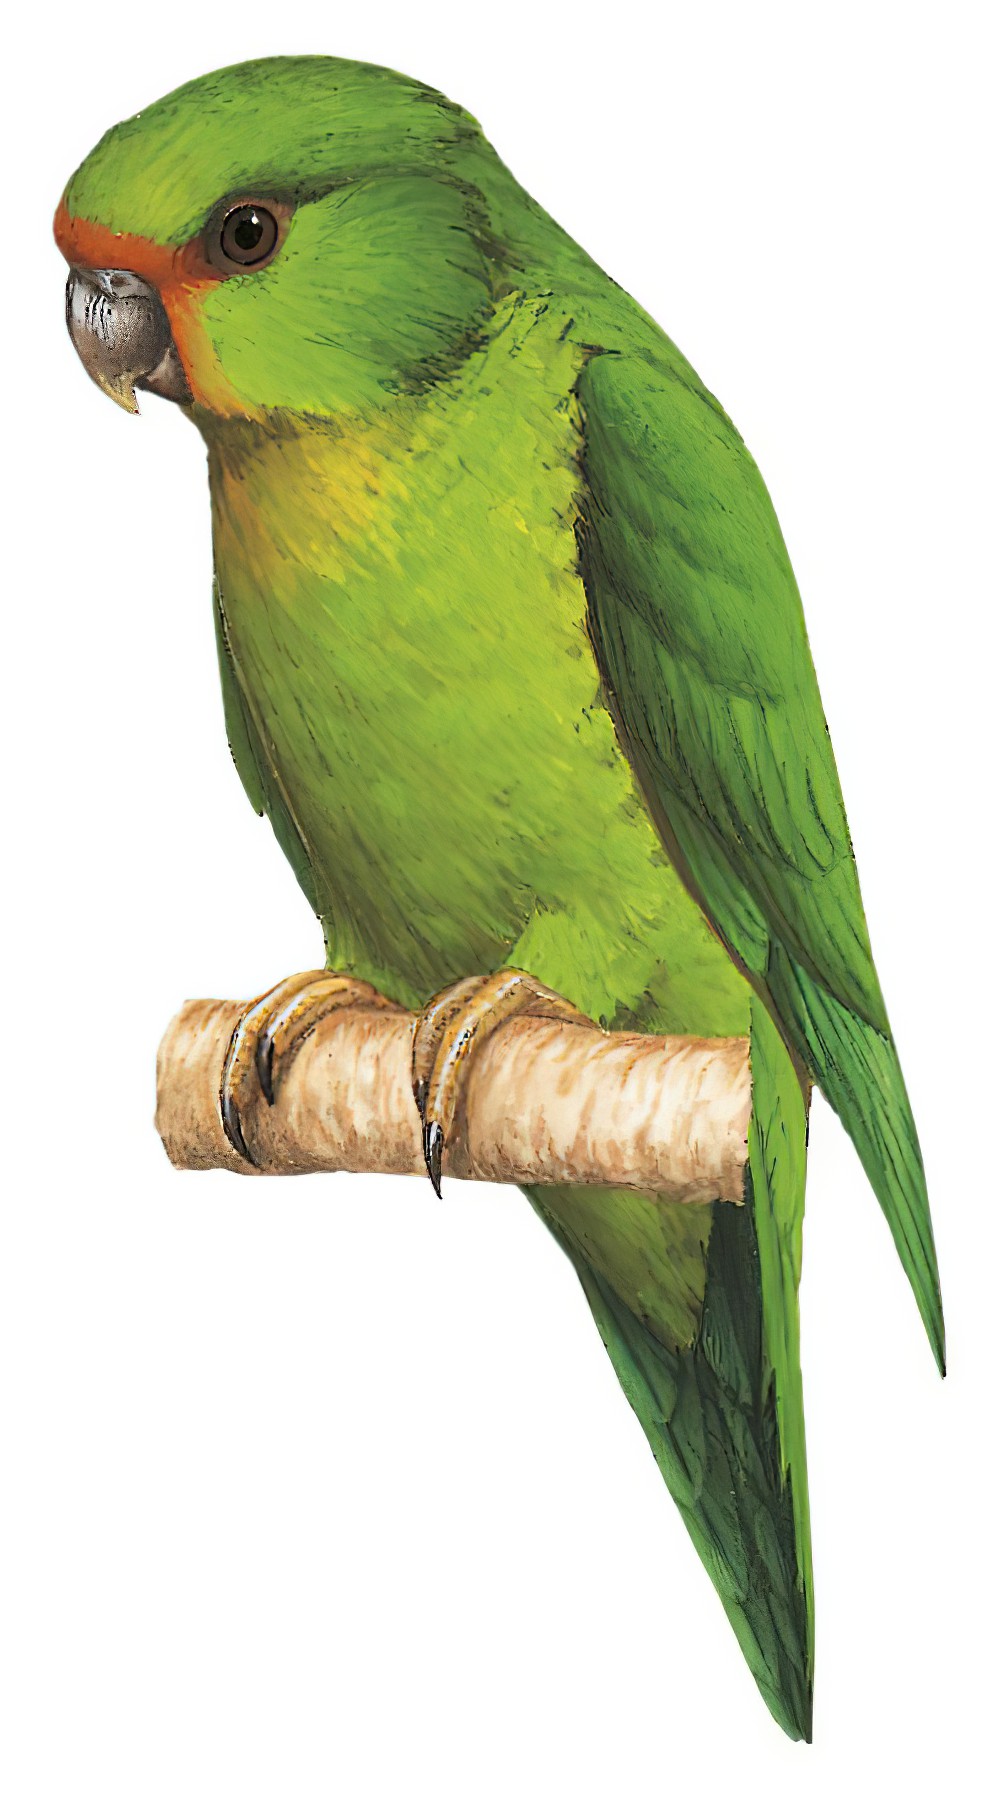 棕额鹦哥 / Rufous-fronted Parakeet / Bolborhynchus ferrugineifrons